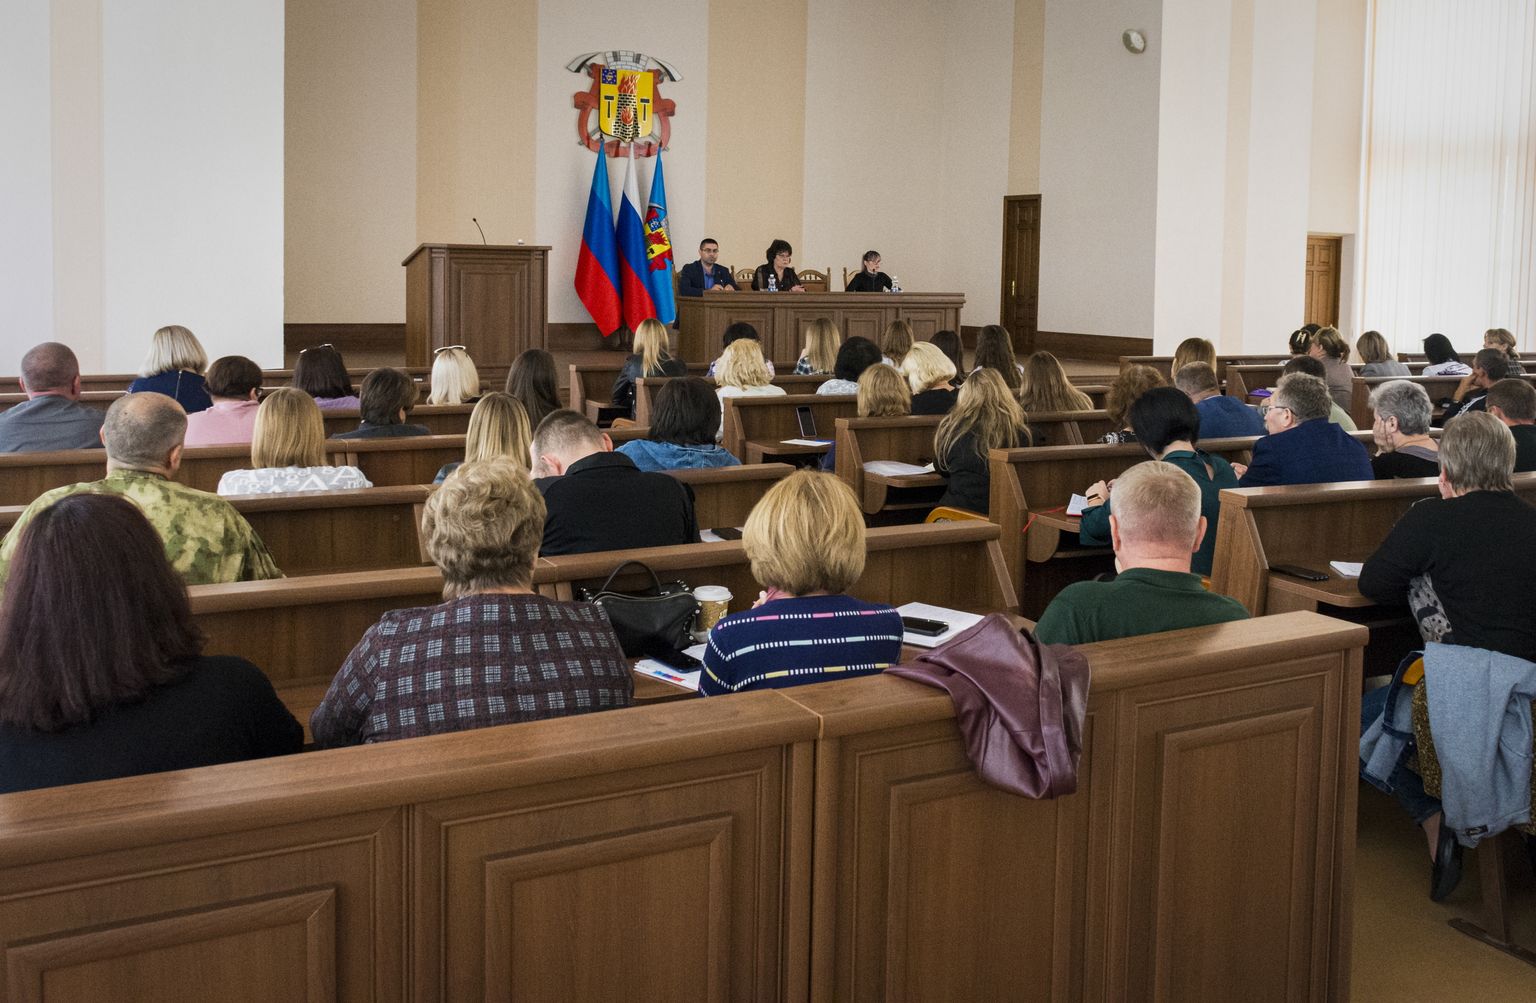 Luhanskā notiek sagatavošanās pseido referendumam par pievienošanos Krievijai